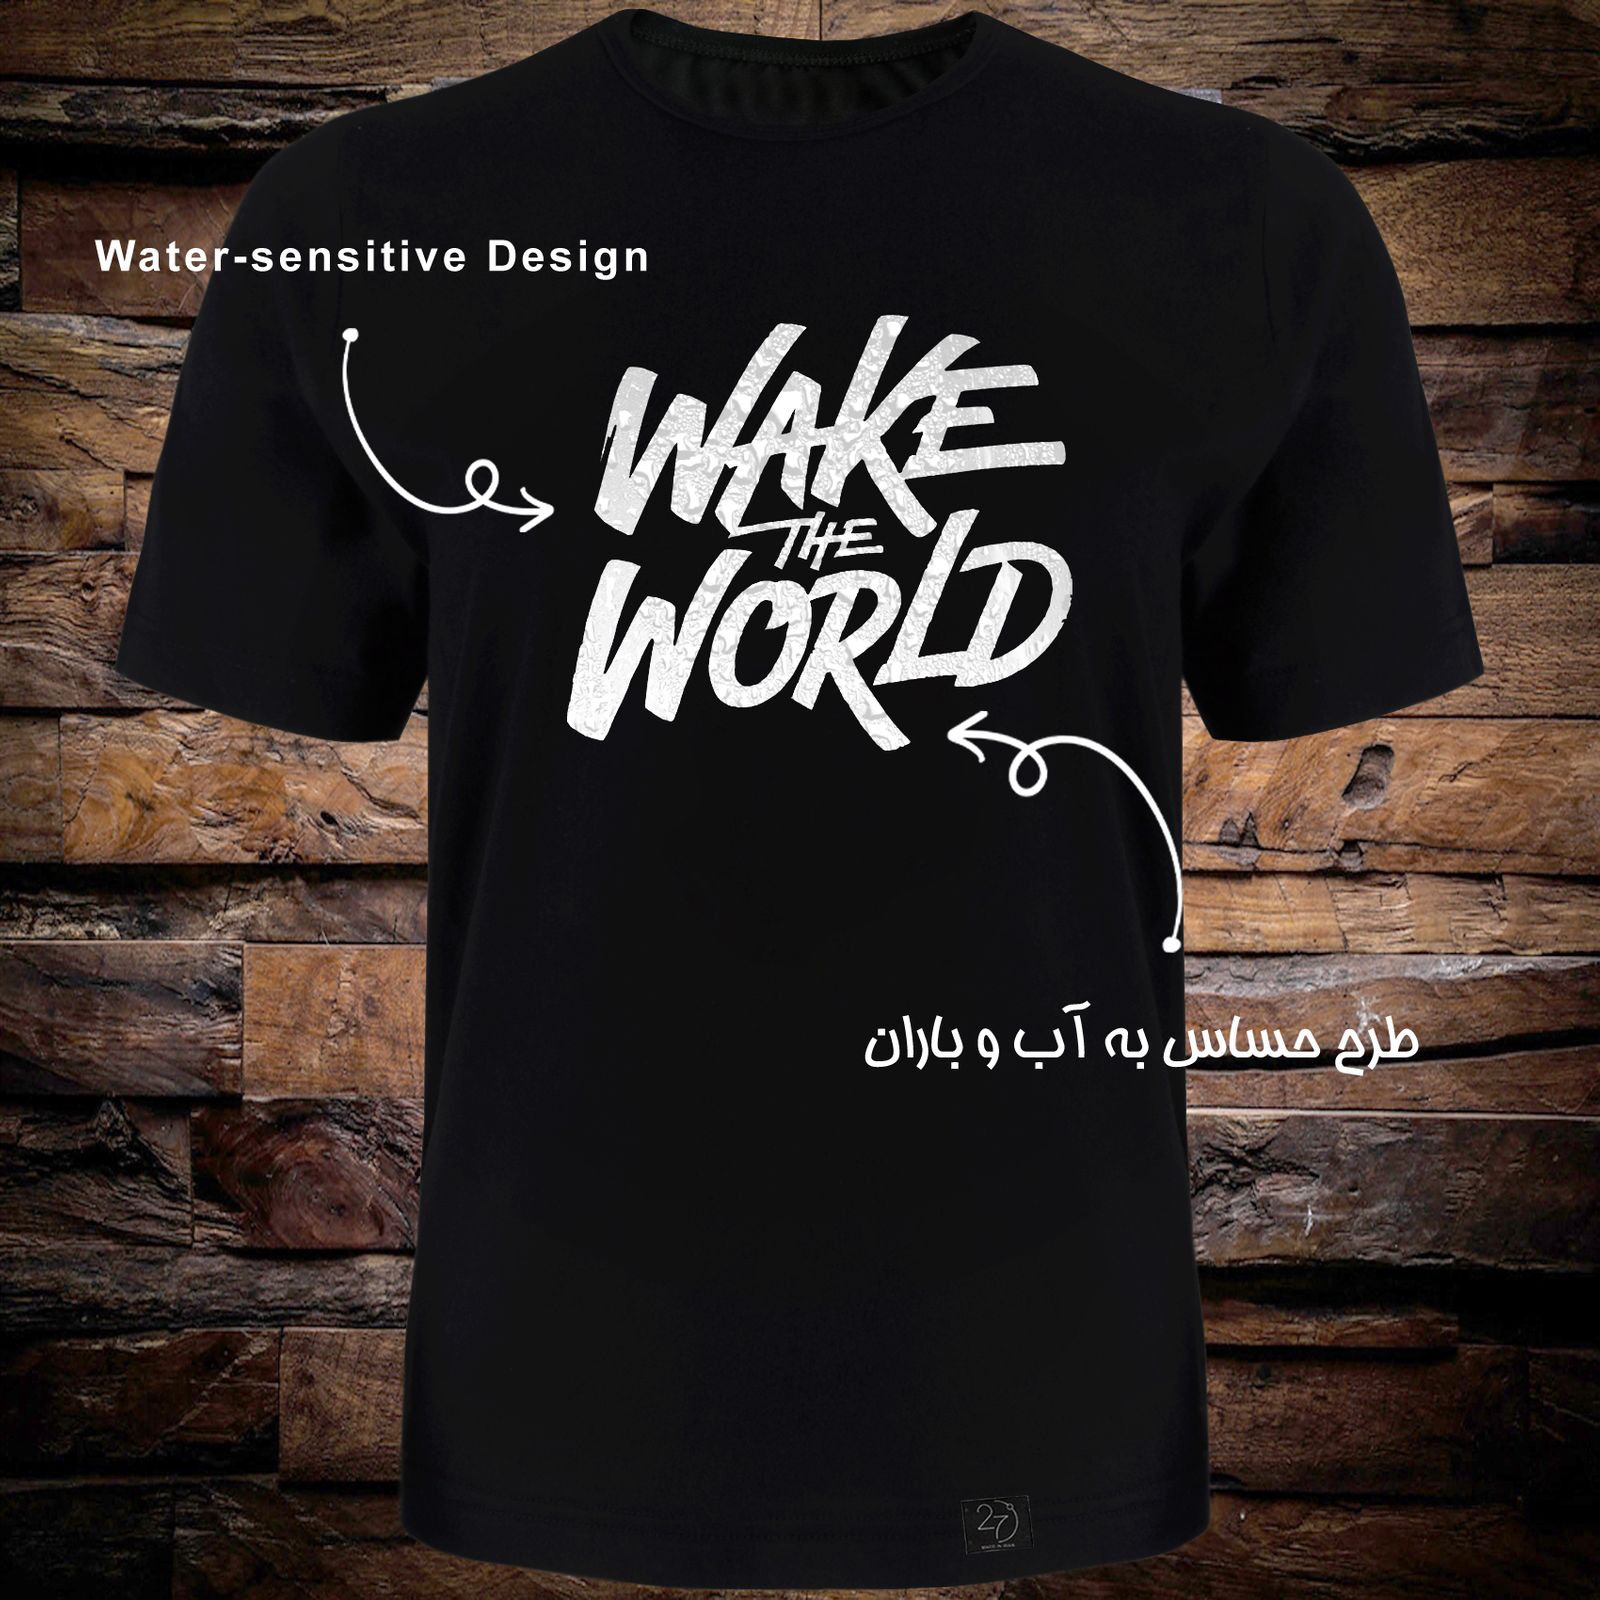 تی شرت آستین کوتاه مردانه 27 طرح World کد TR02 رنگ مشکی -  - 3